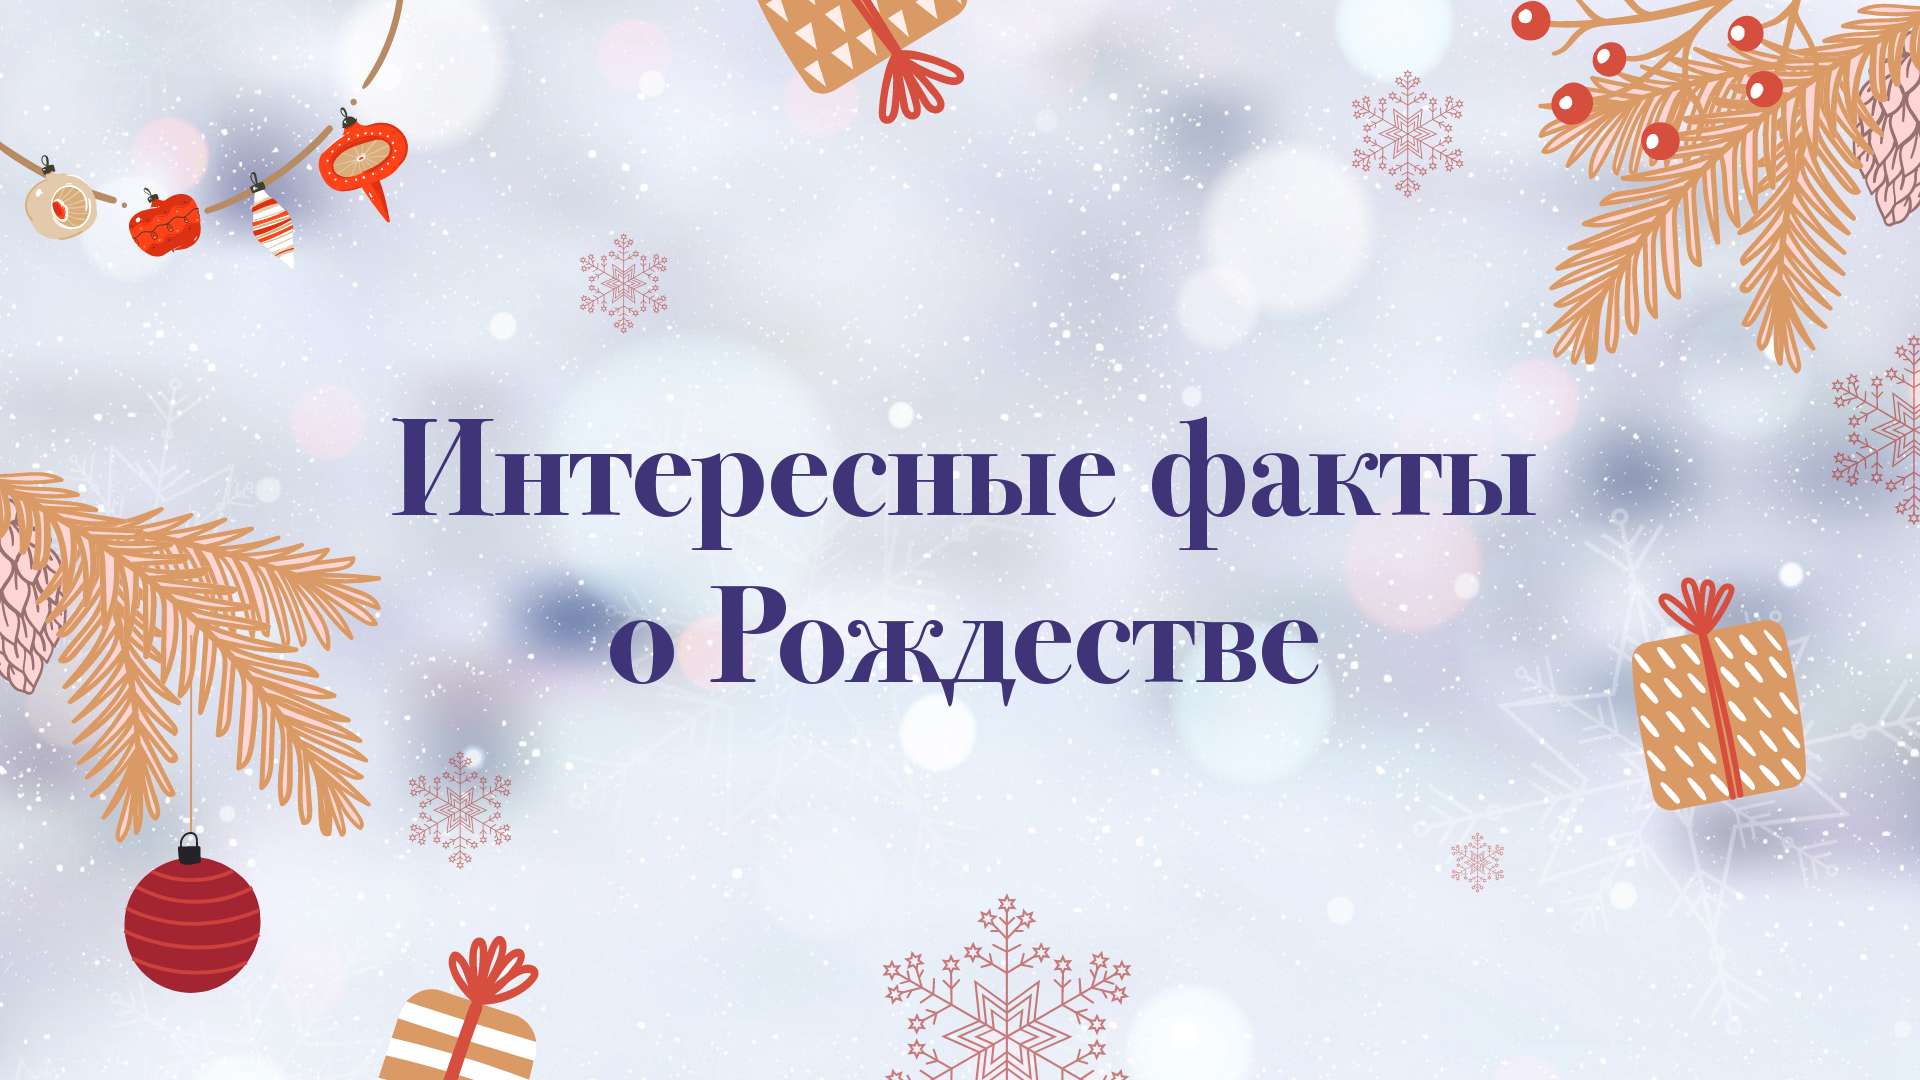 Светлая рождественская публикация для соцсетей с тематическими украшениями и снежинками